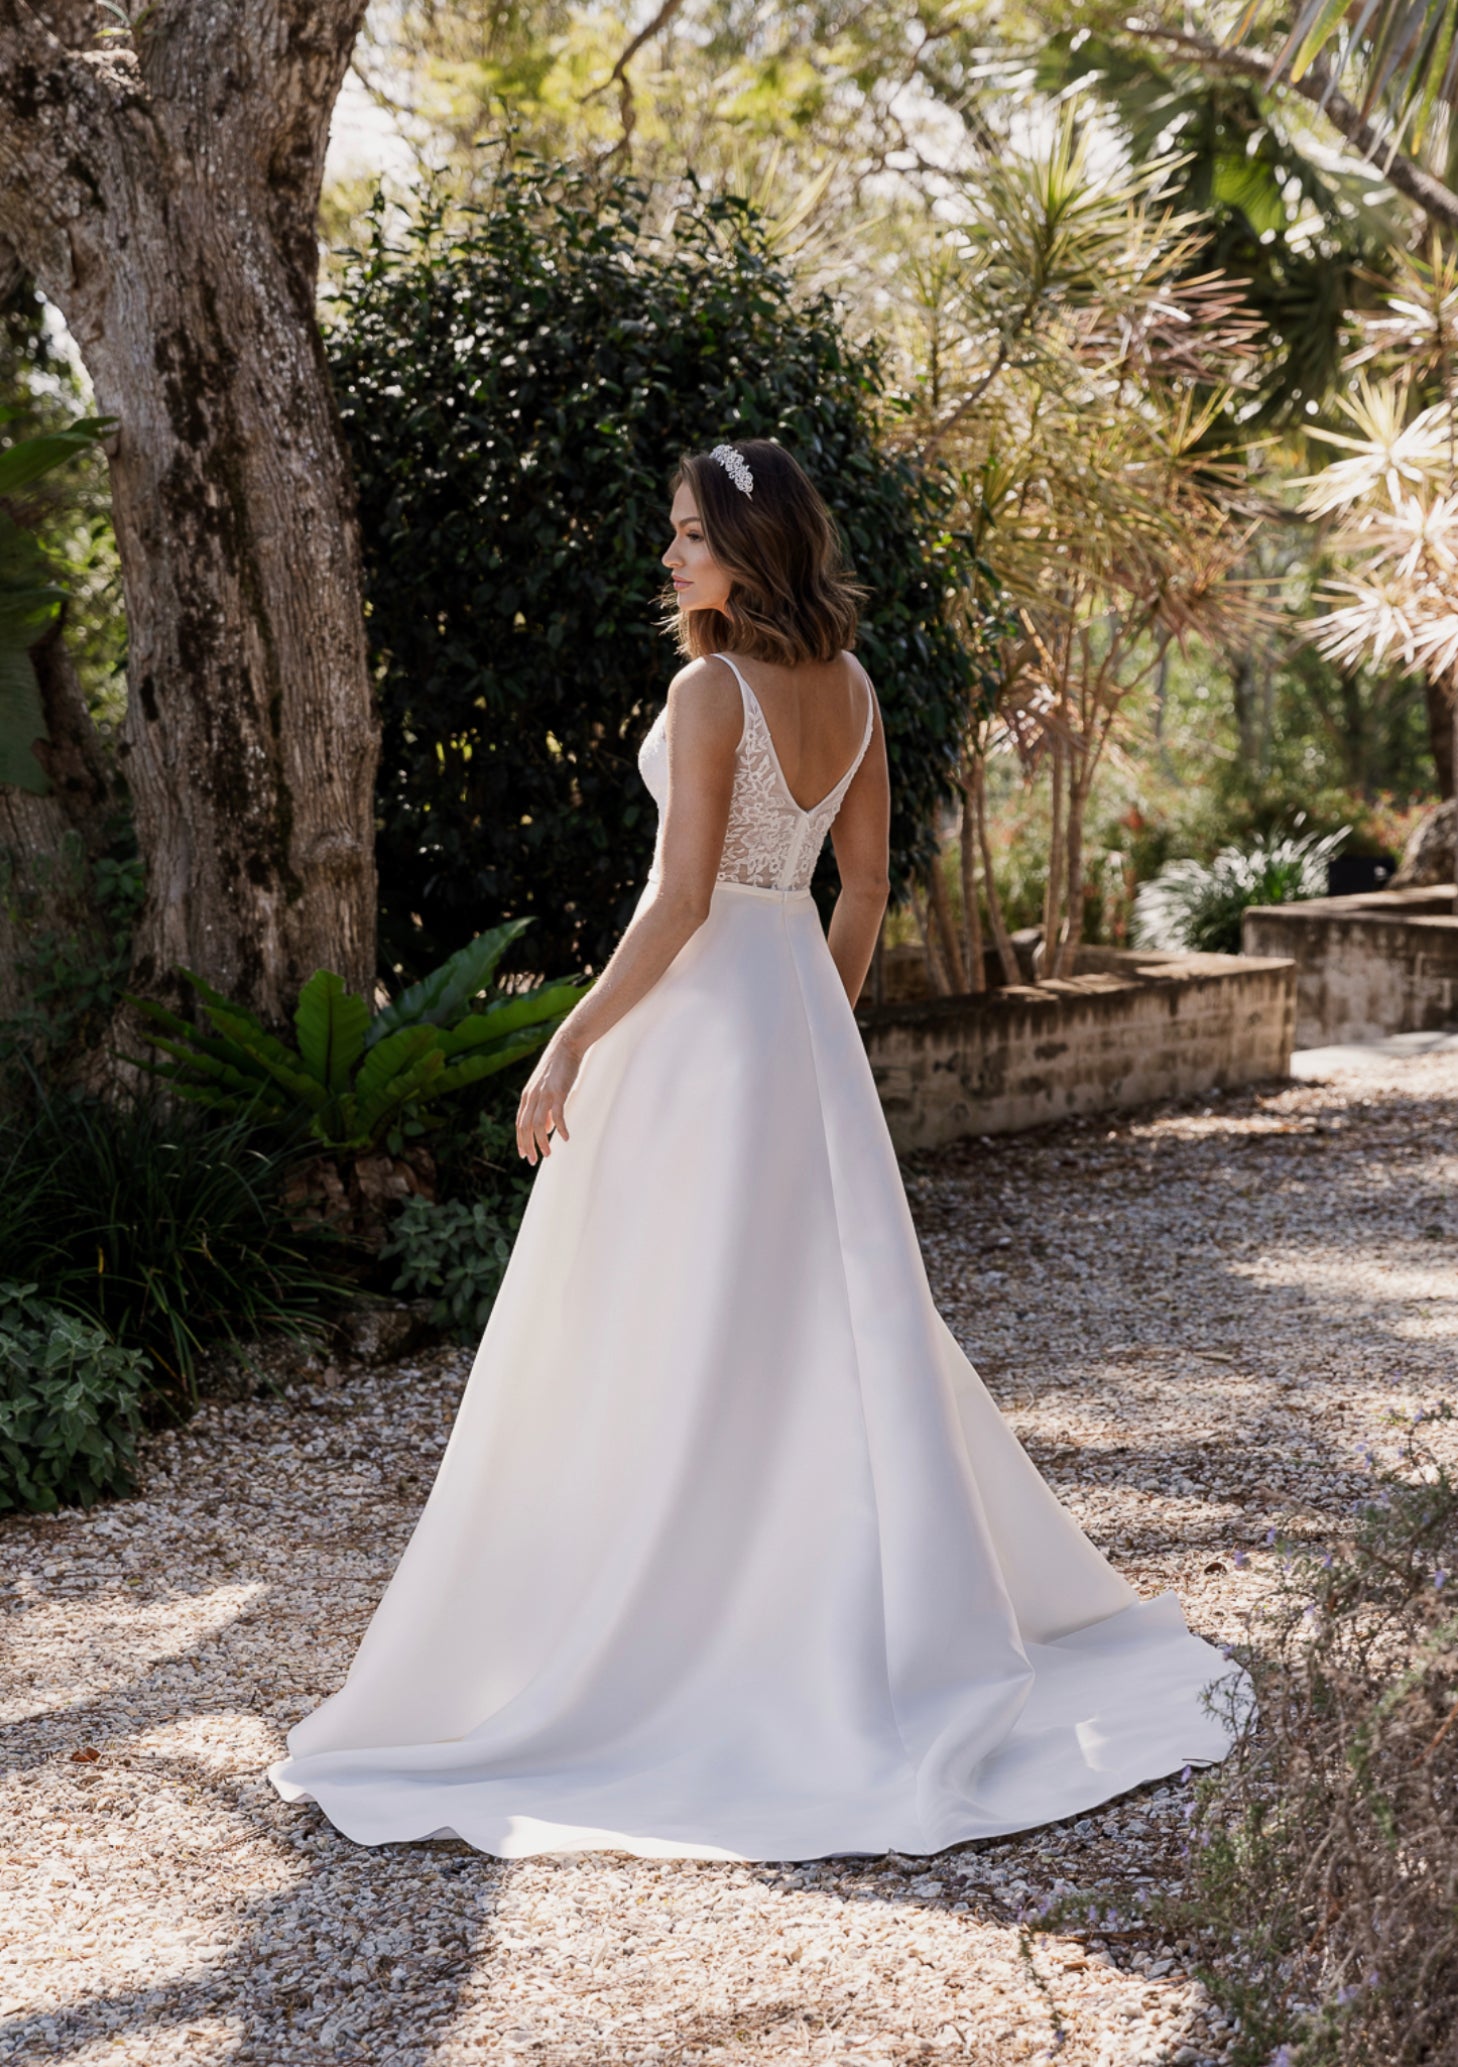 Estelle by Tania Olsen Vintage White Wedding Dress